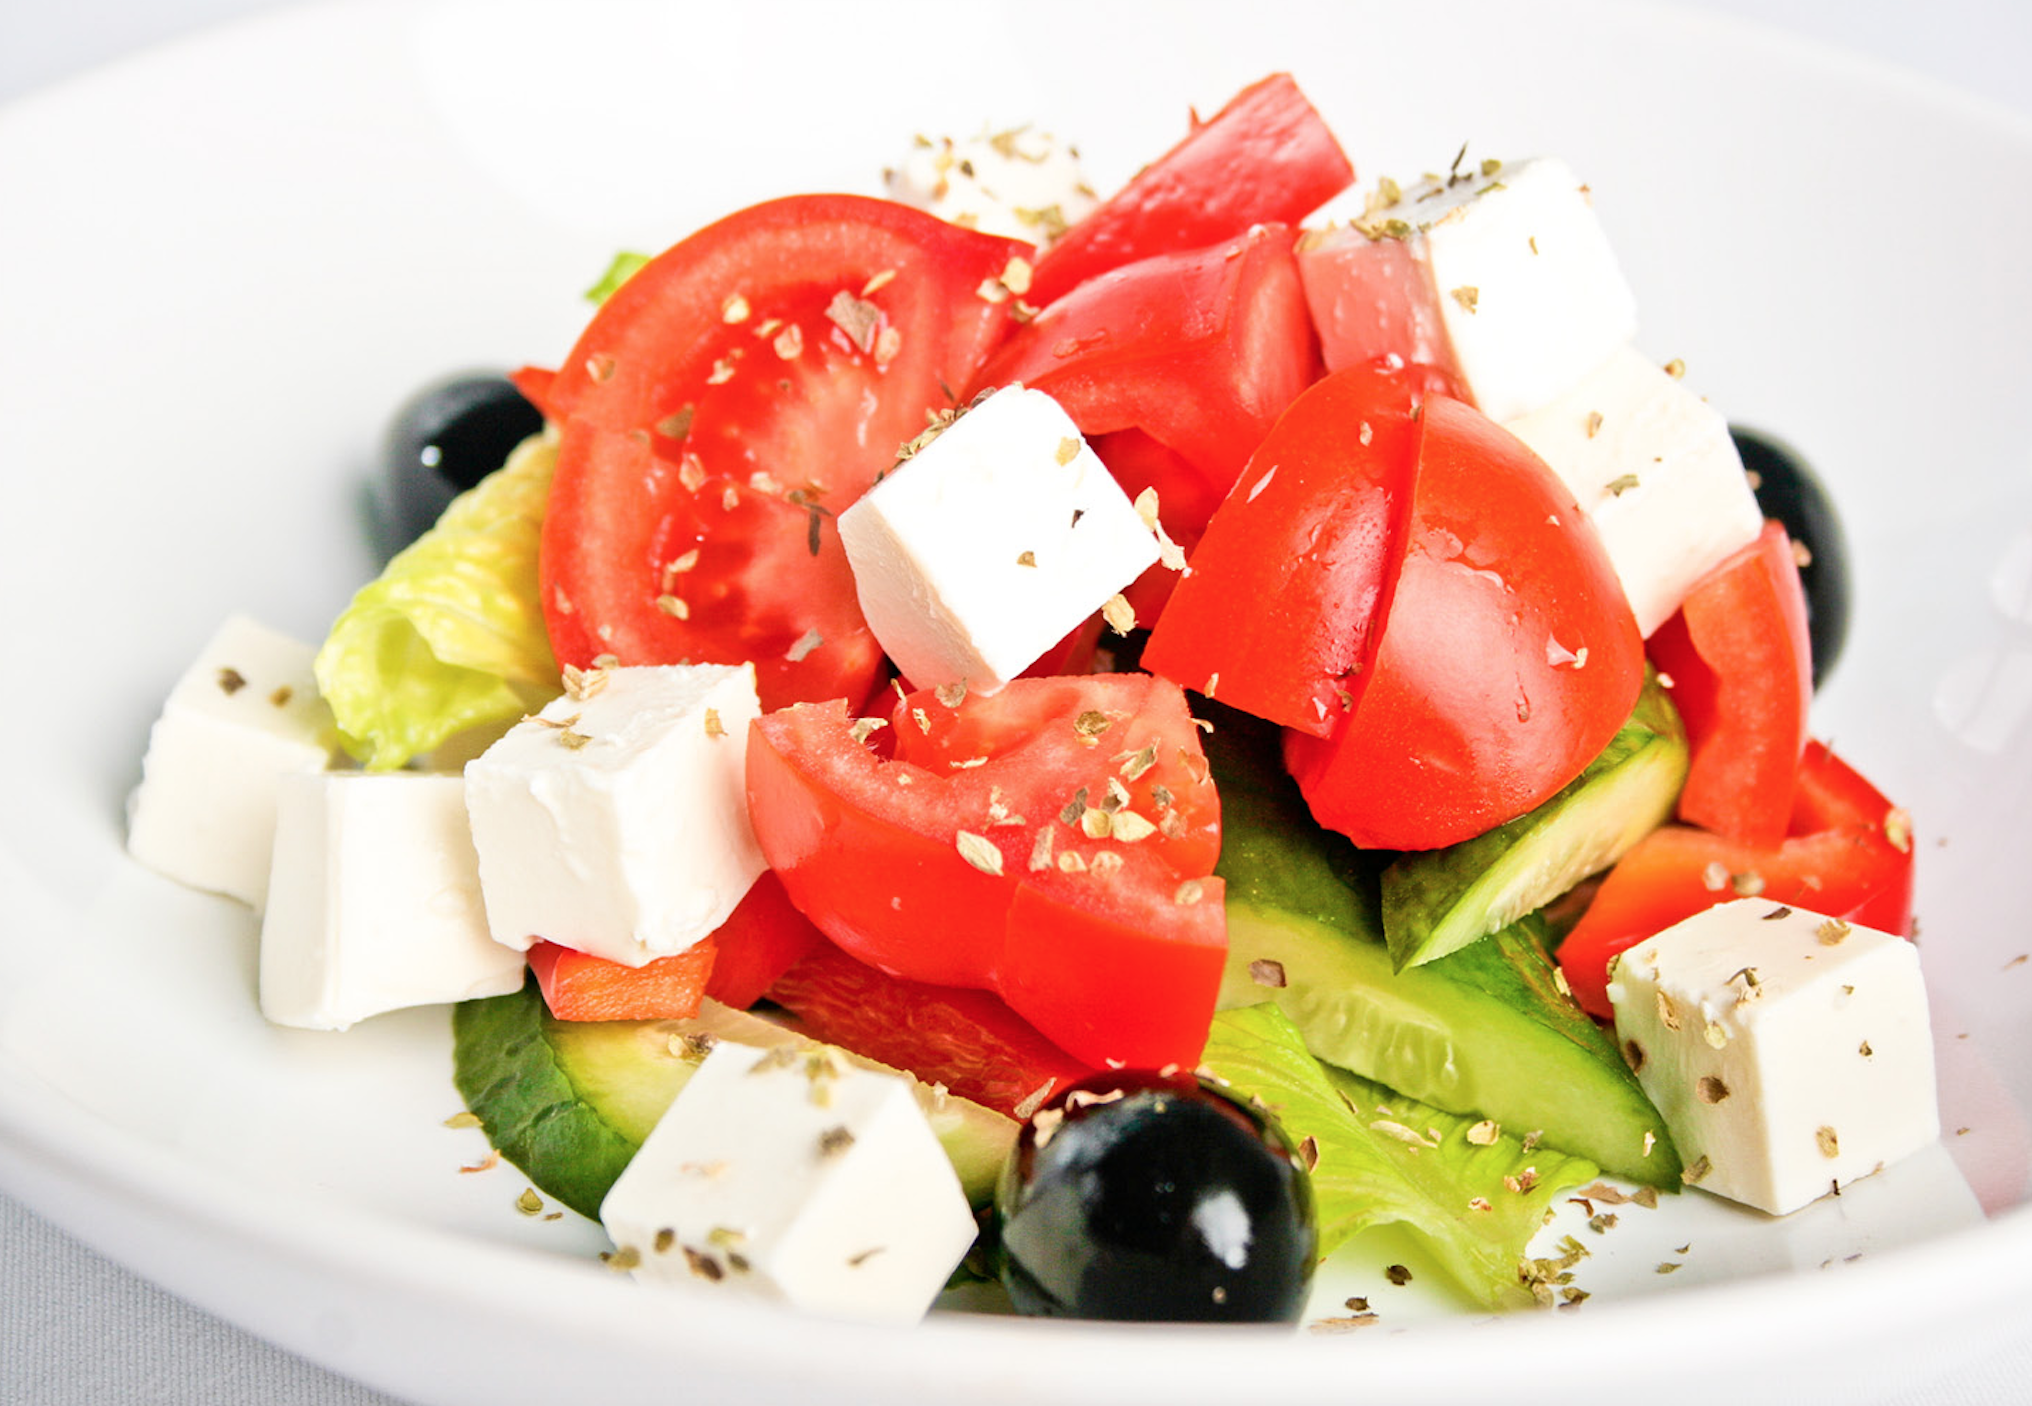 Греческий салат с фетой и оливками. Греческий салат с сыром Фета. Фетакса помидоры,огурцы перец маслины. Салат помидоры болгарский перец сыр Фета. Помидоры черри с фетаксой